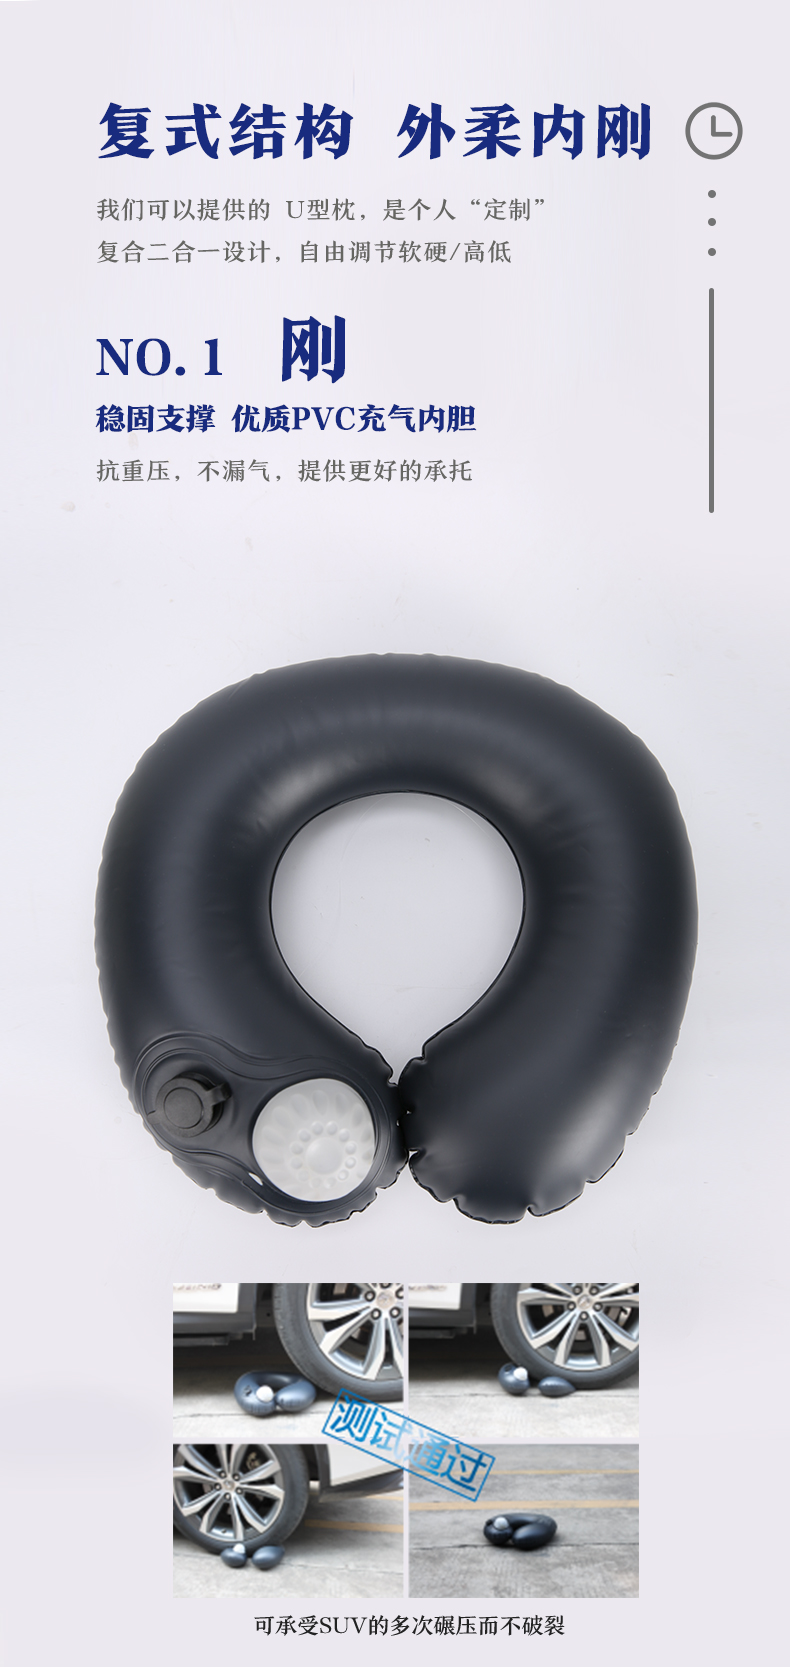 我们推荐便携充气枕价格_充气球相关-广州好用科技有限公司